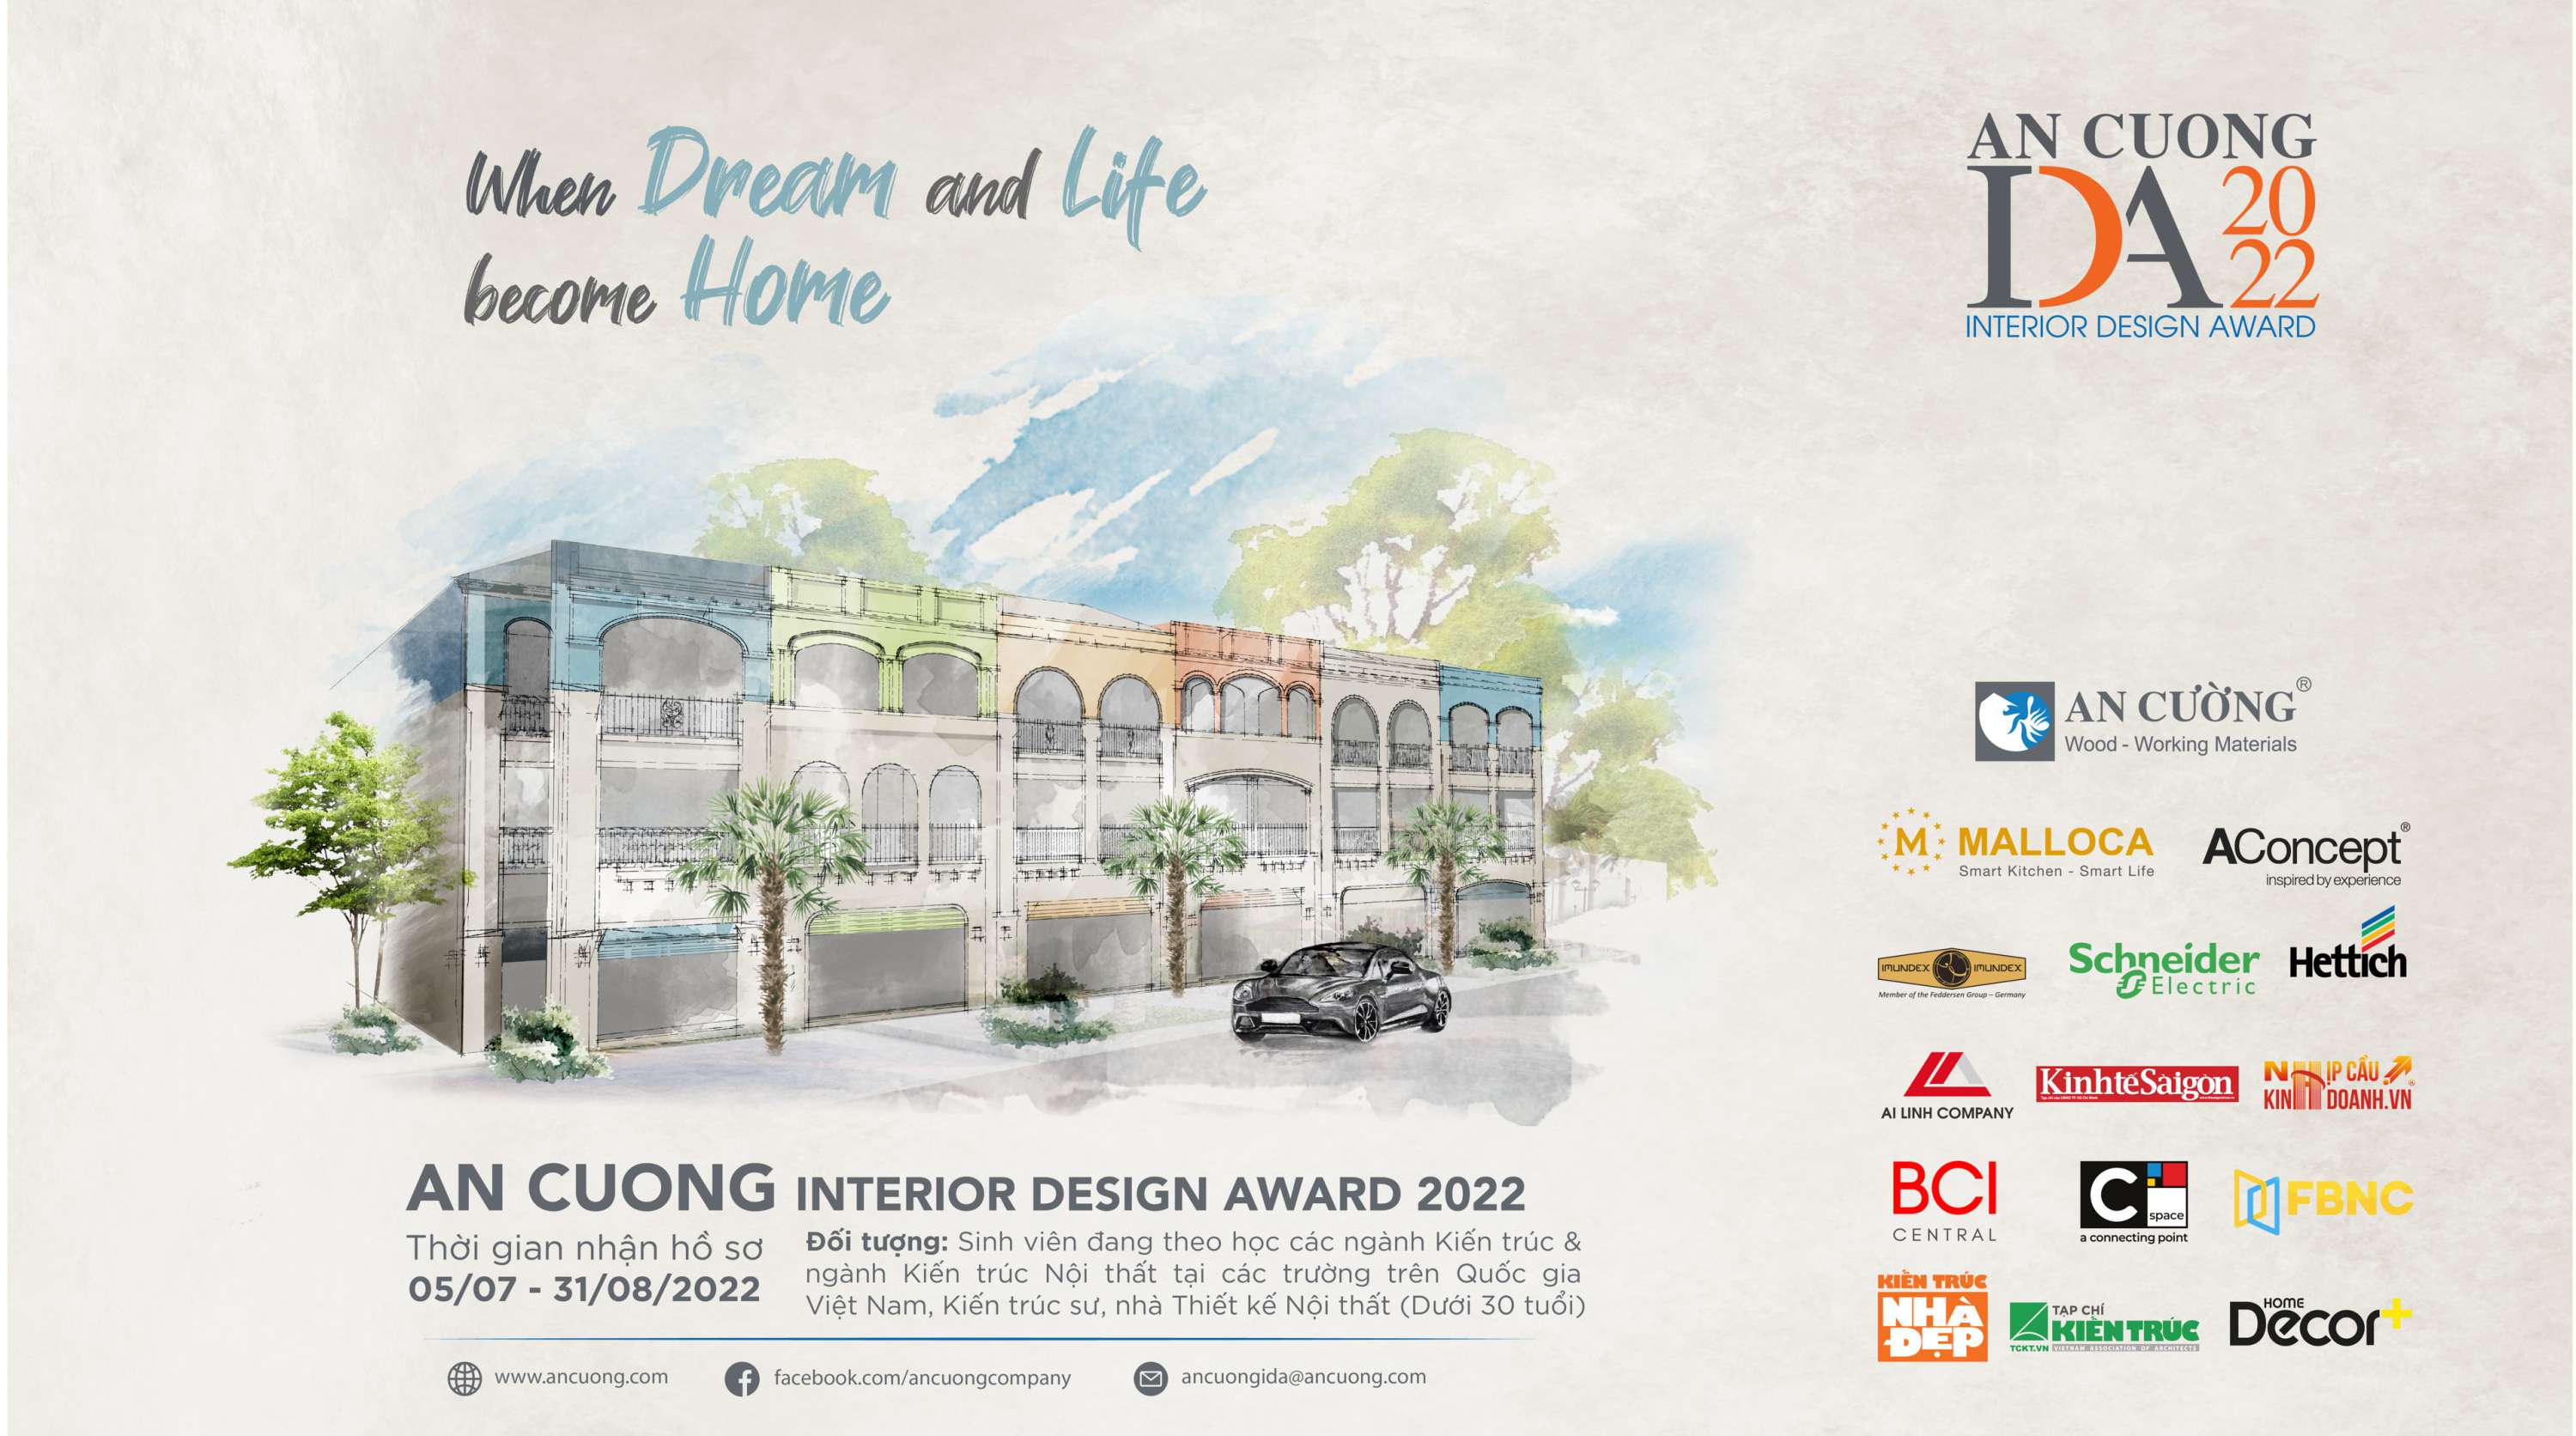 An Cuong Interior Design Award 2022 KV Master